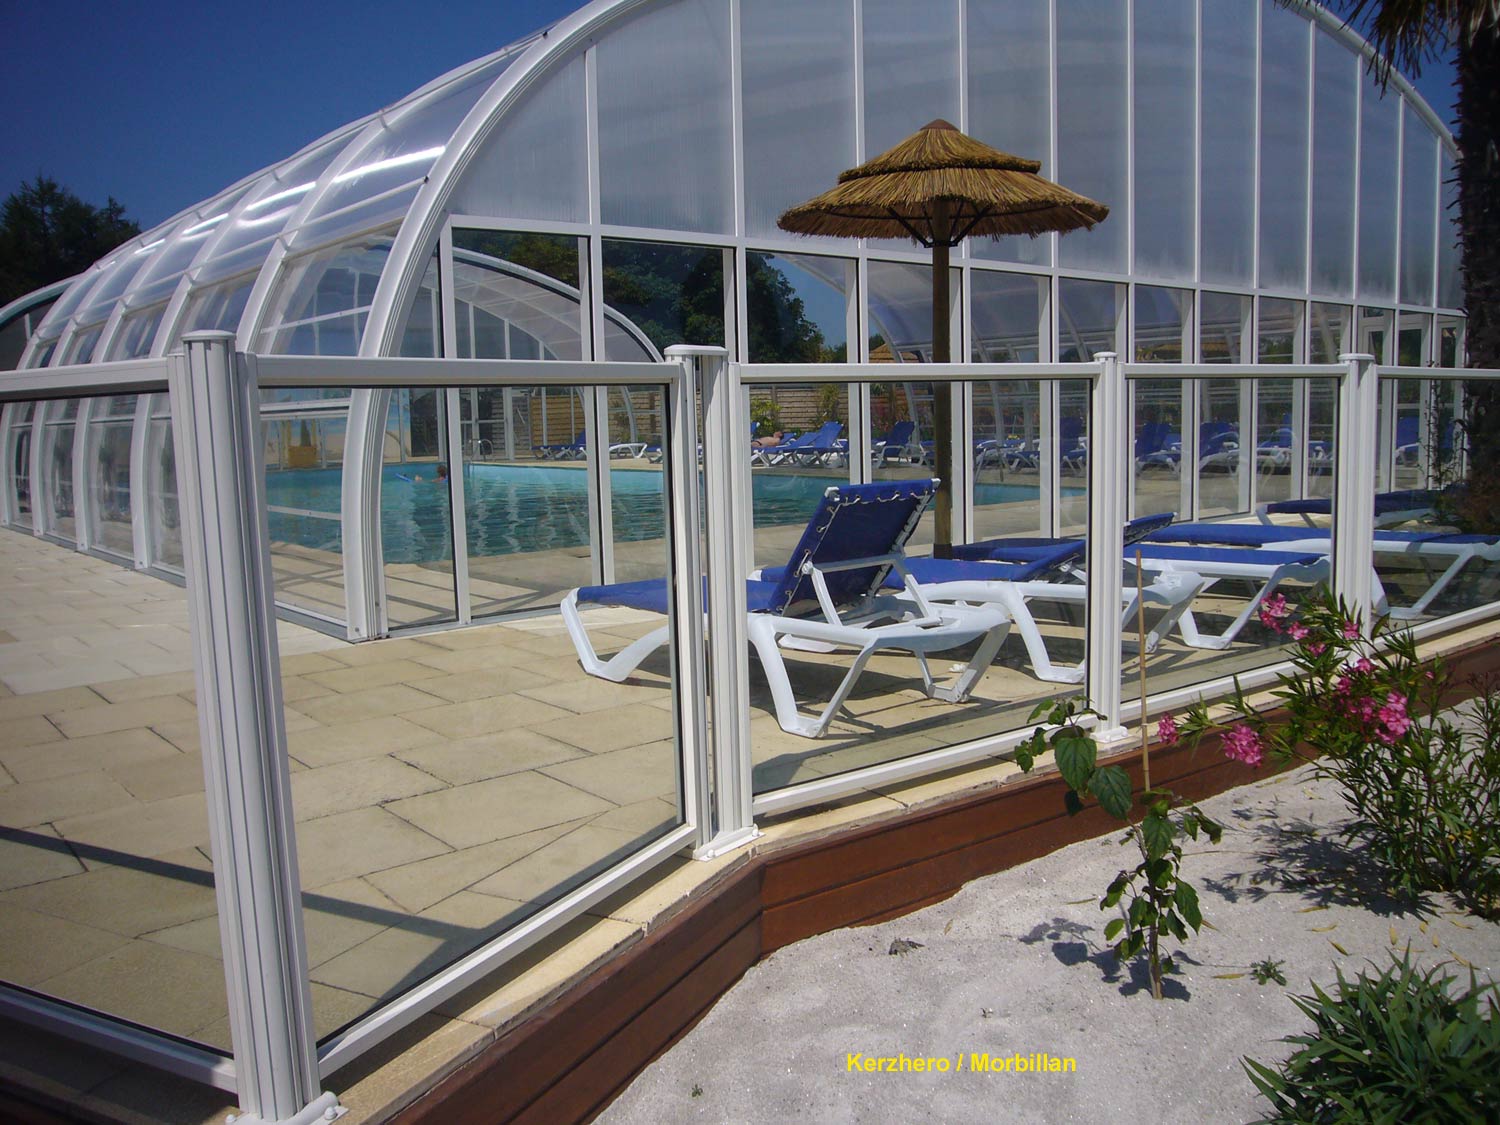 barrière de piscine en verre et barreaux camping Kerzhero - Morbillan - clôturant un superbe équipement paysagé avec plusieurs bassins de piscine